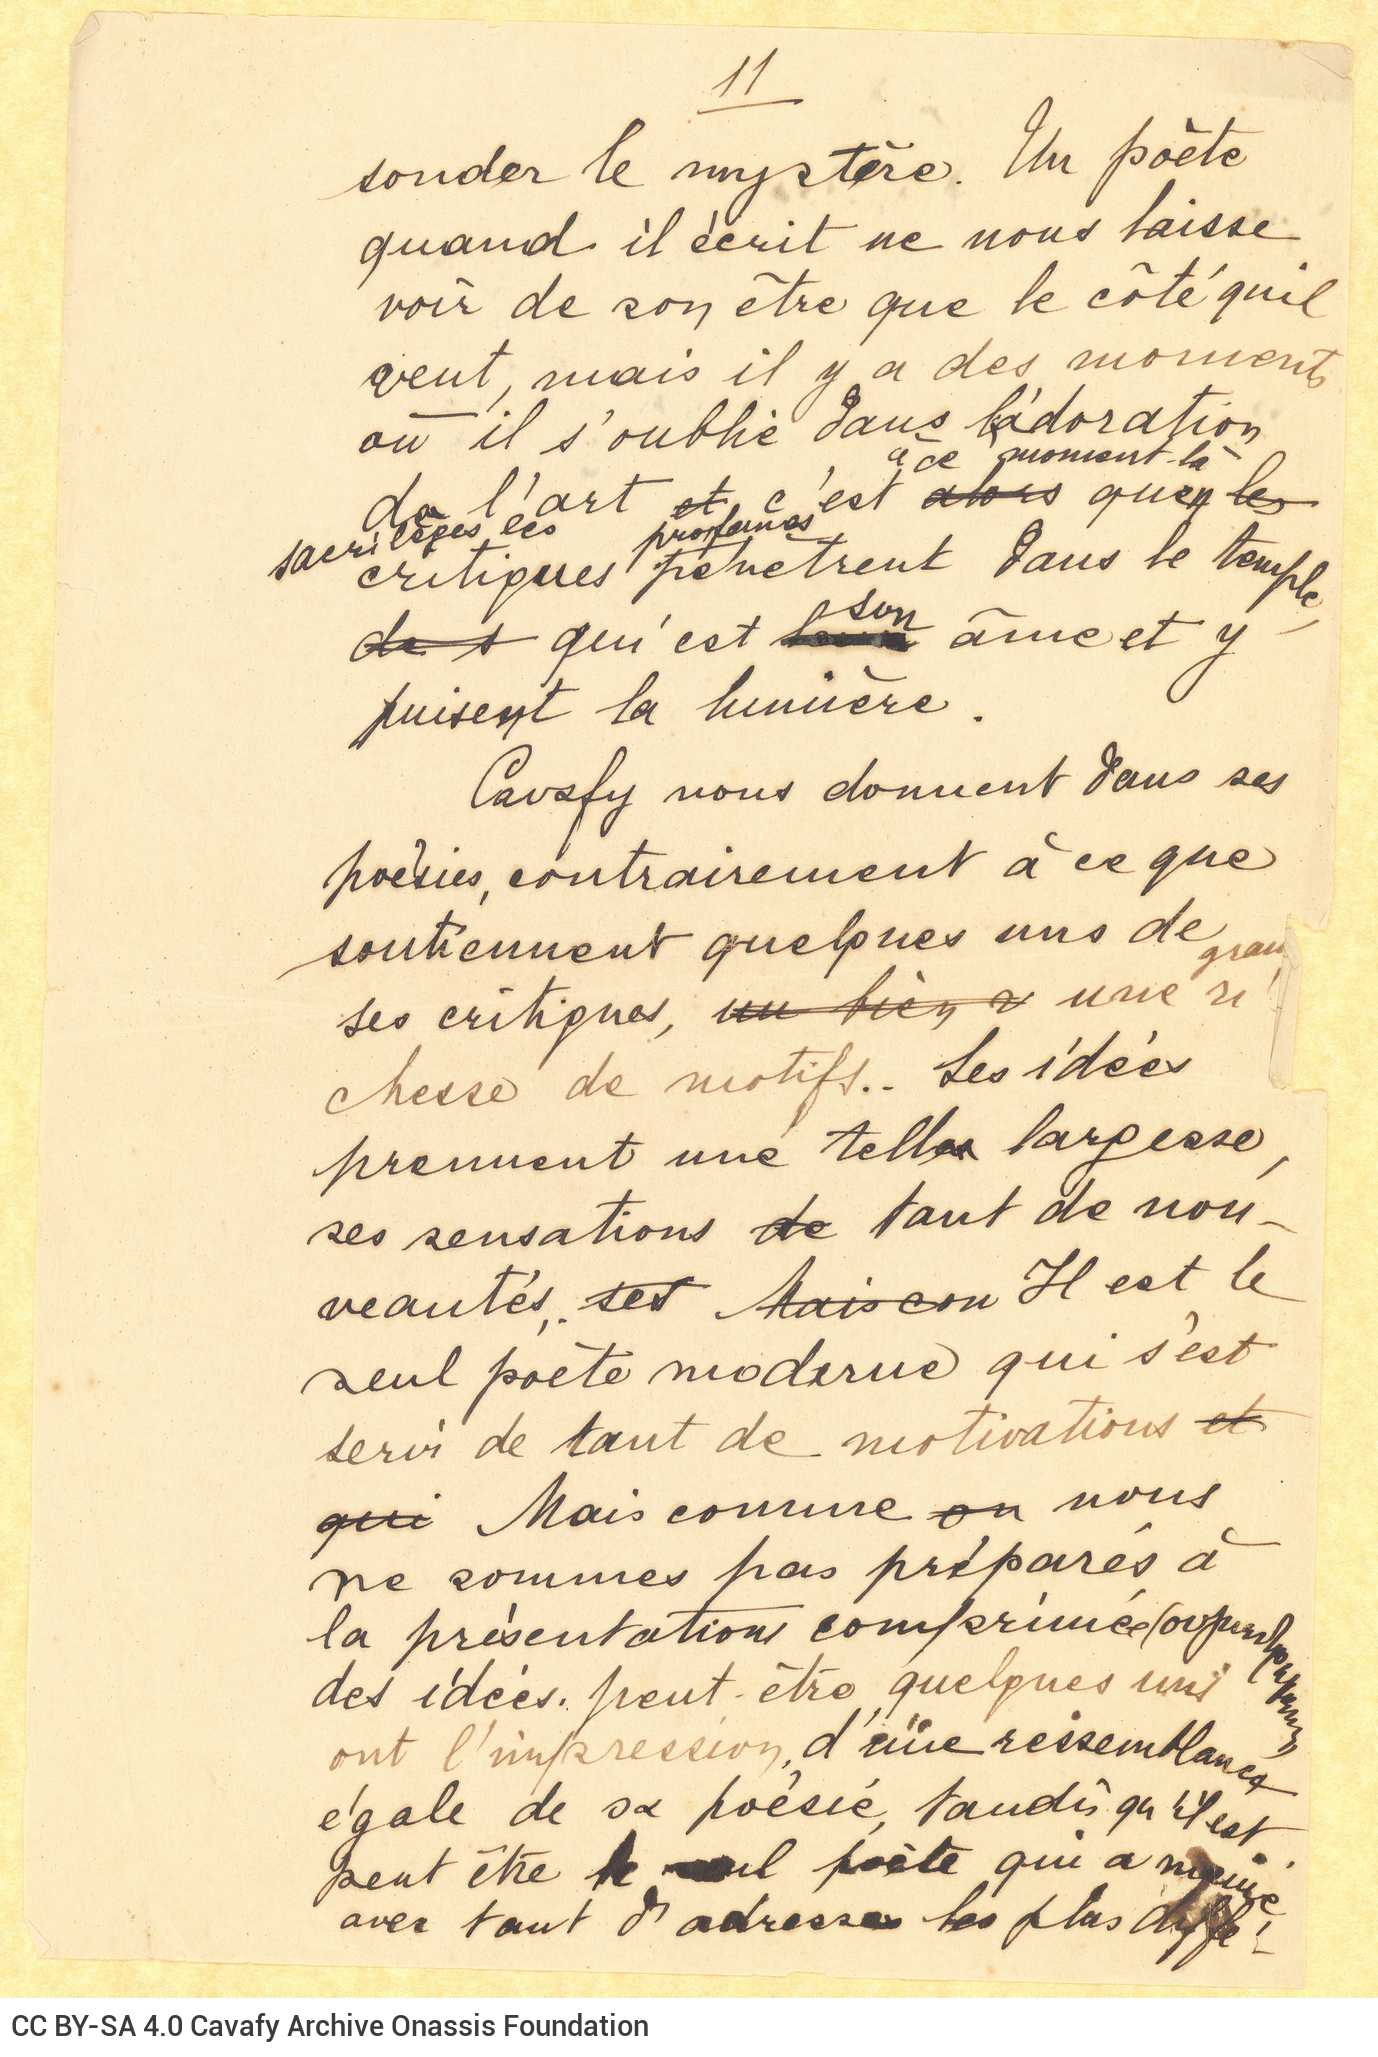 Δύο χειρόγραφα κείμενα της Ρίκας Σεγκοπούλου σχετικά με τον Καβάφη �